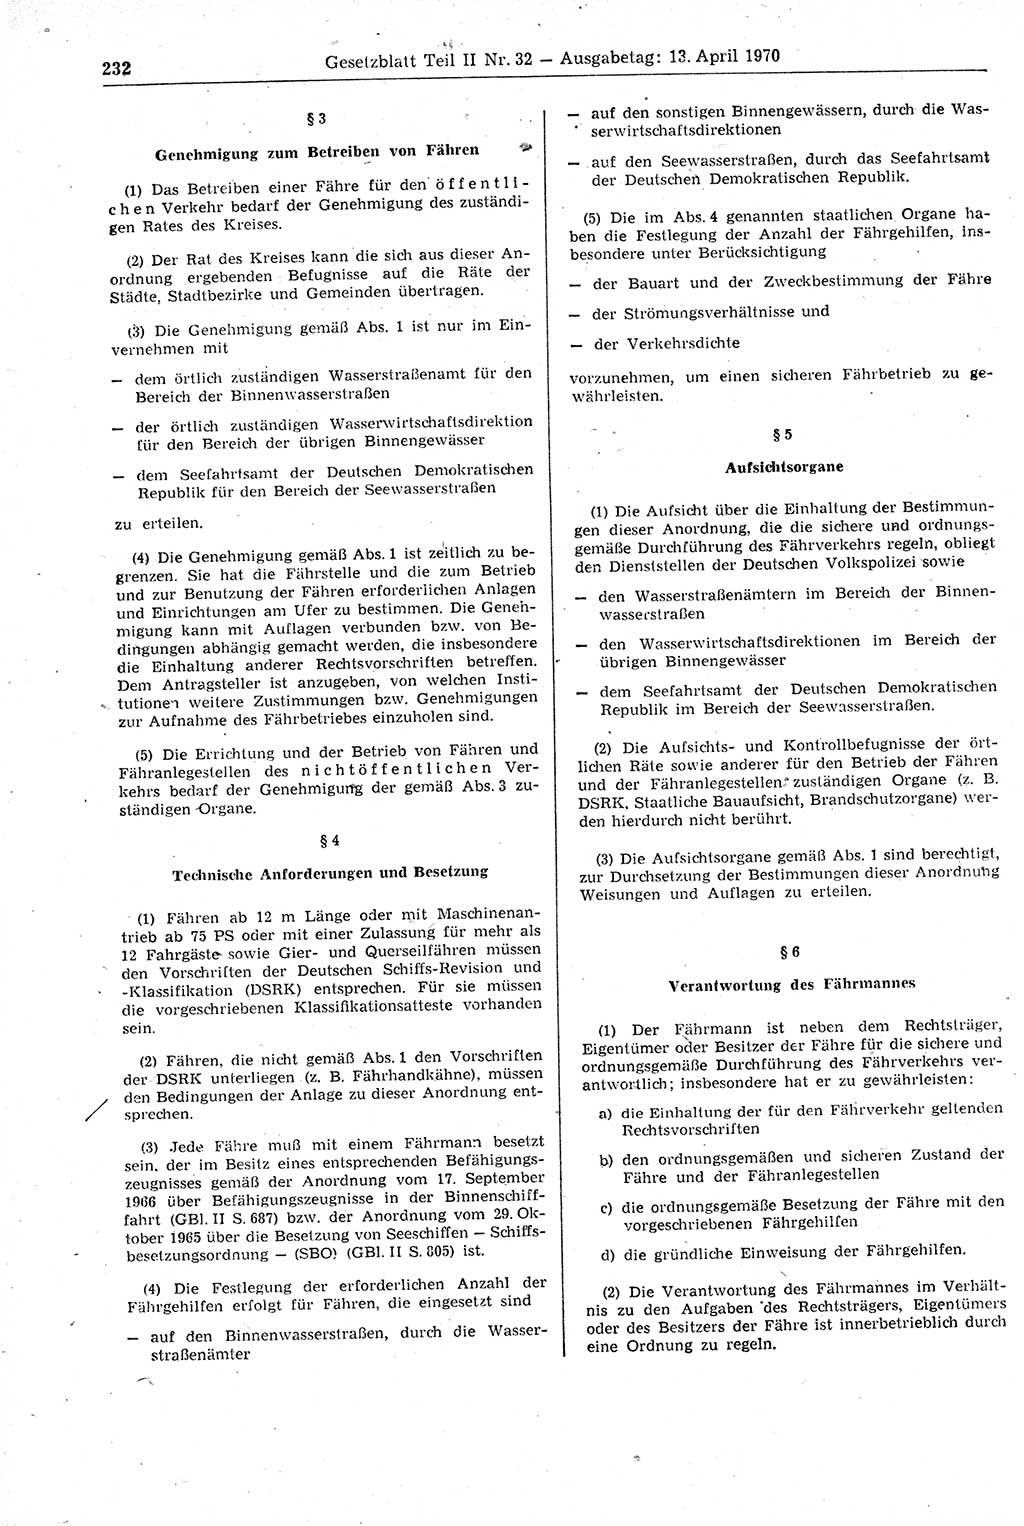 Gesetzblatt (GBl.) der Deutschen Demokratischen Republik (DDR) Teil ⅠⅠ 1970, Seite 232 (GBl. DDR ⅠⅠ 1970, S. 232)